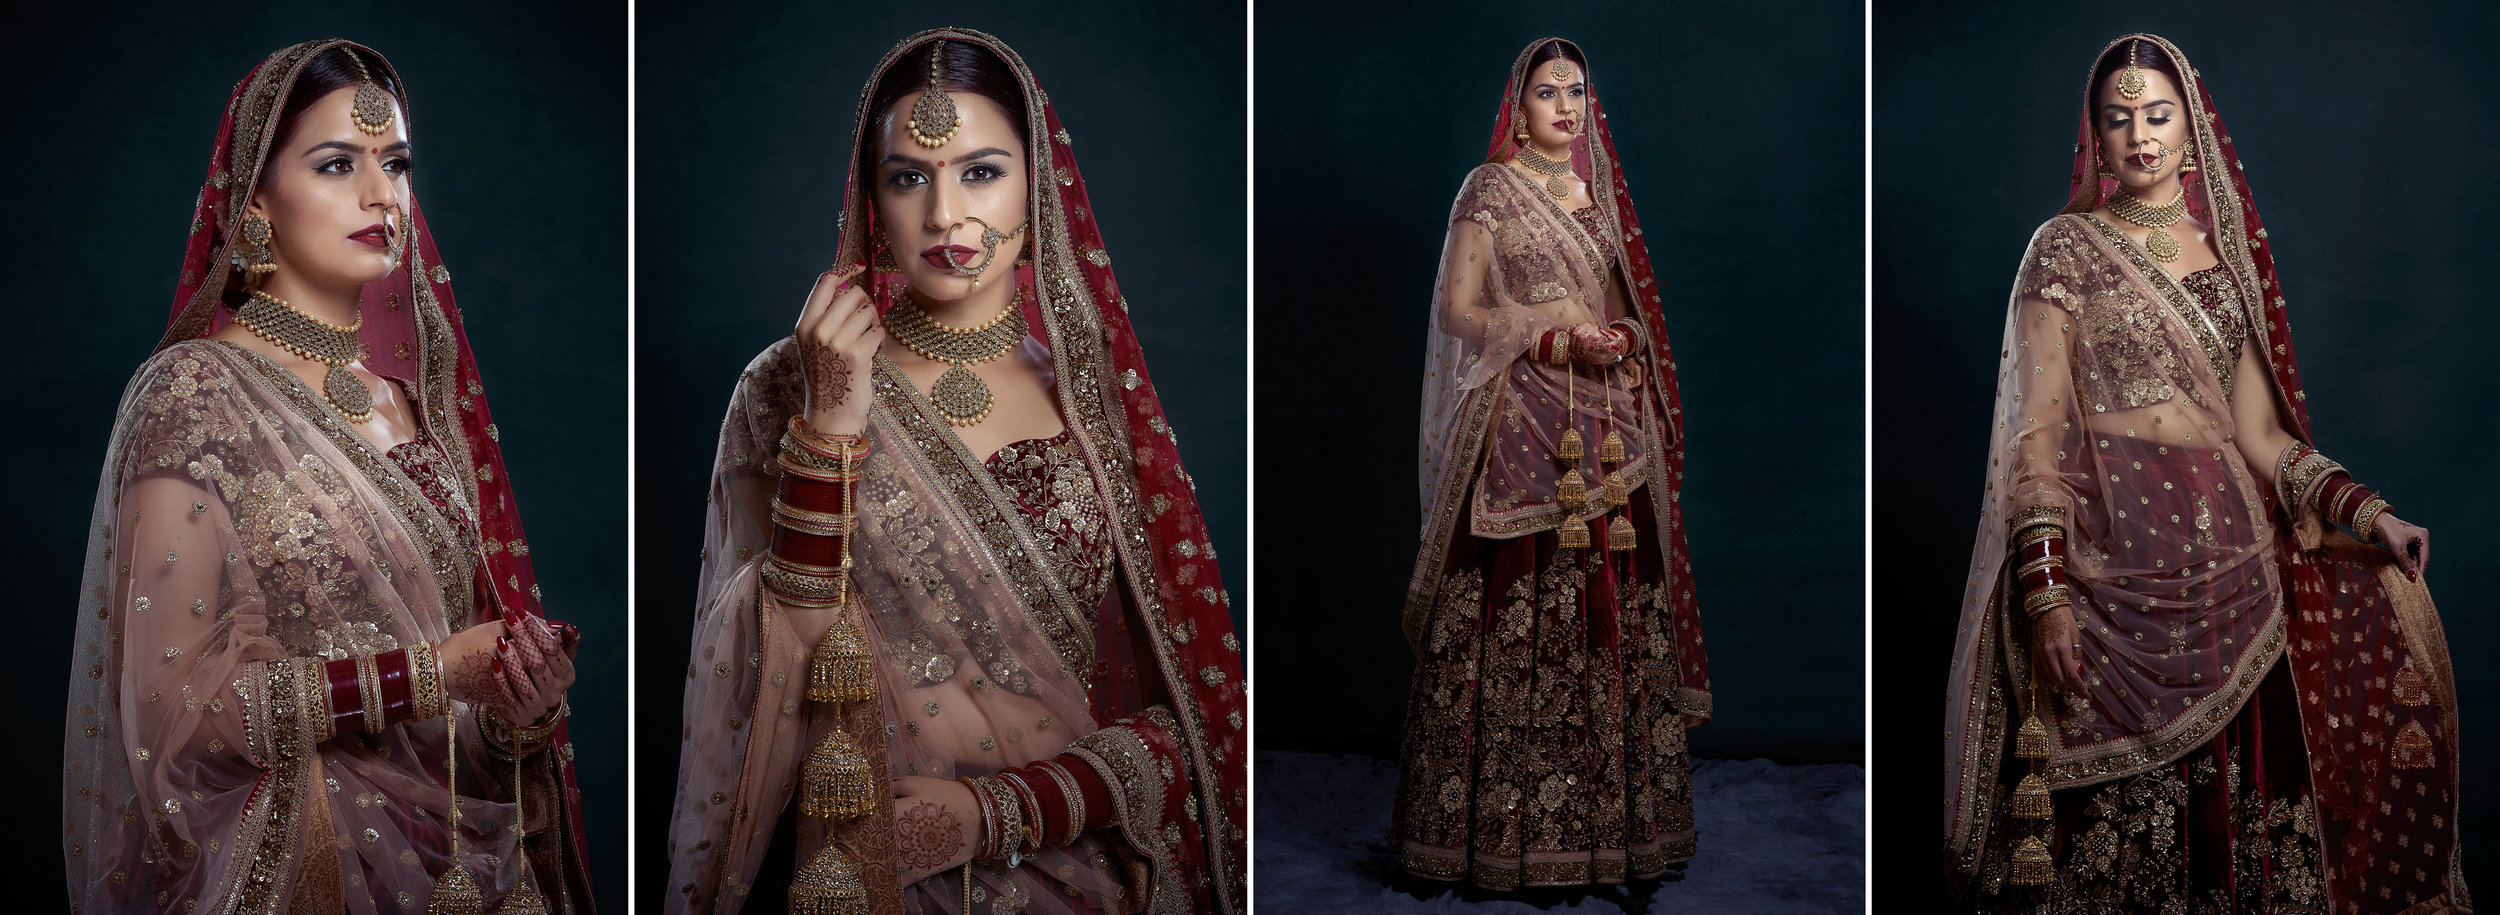 Sikh Wedding Album spread 12 - bridal portraits wearing Sabyasachi